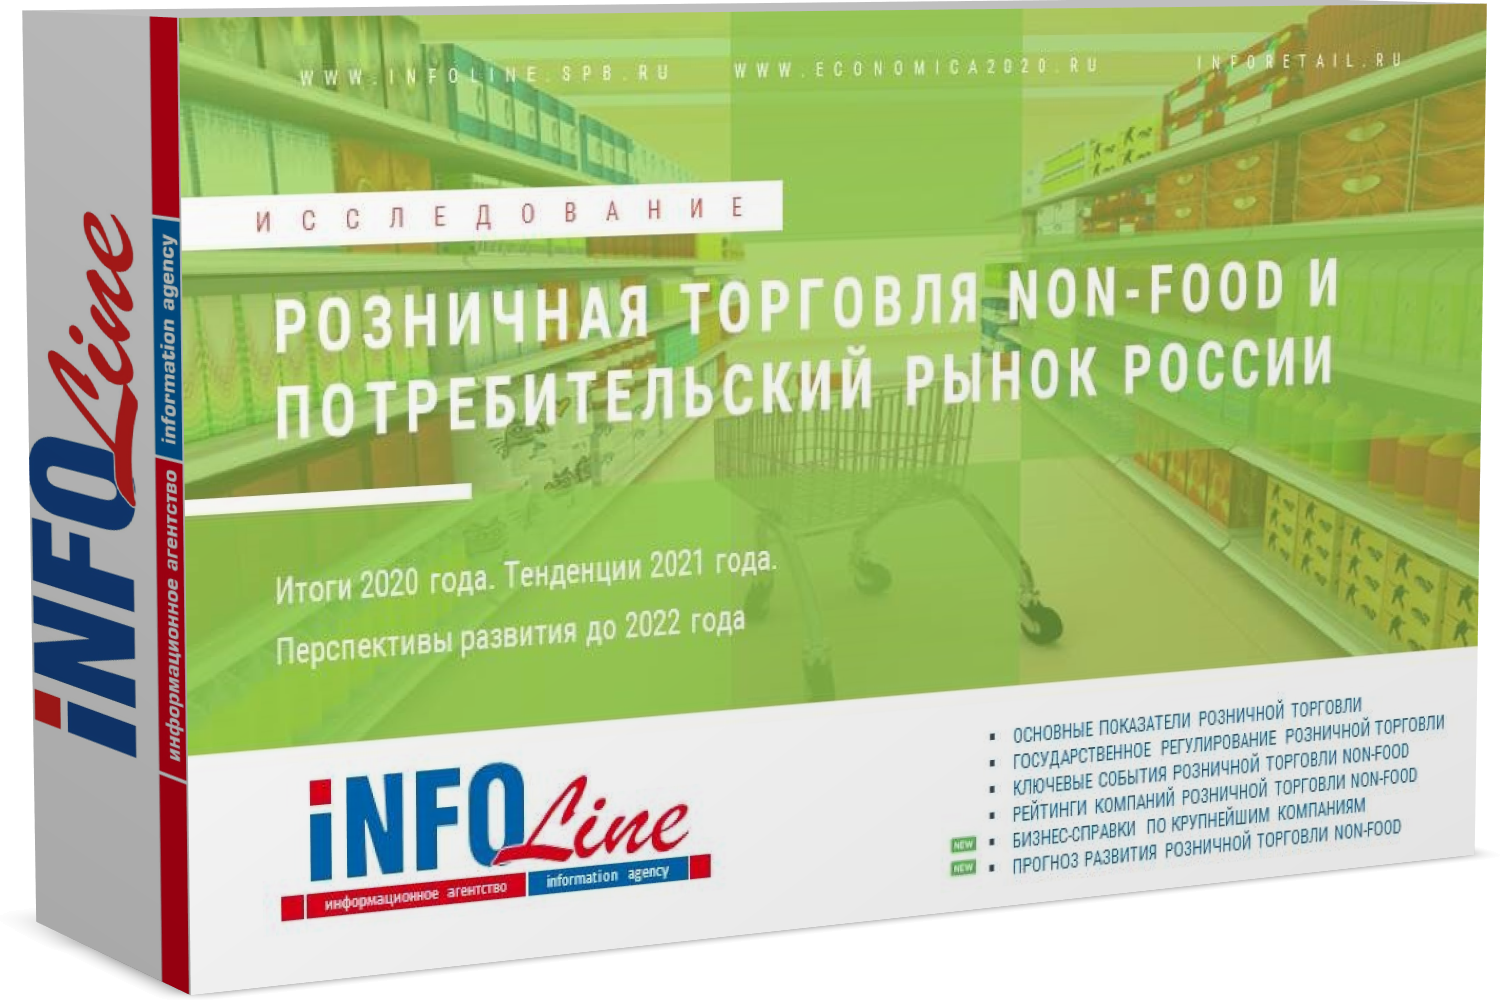 Исследование "Розничная торговля Non-Food и потребительский рынок России 2021 года. Итоги 2020 года и перспективы развития до 2023 года" (доступна обновленная версия)